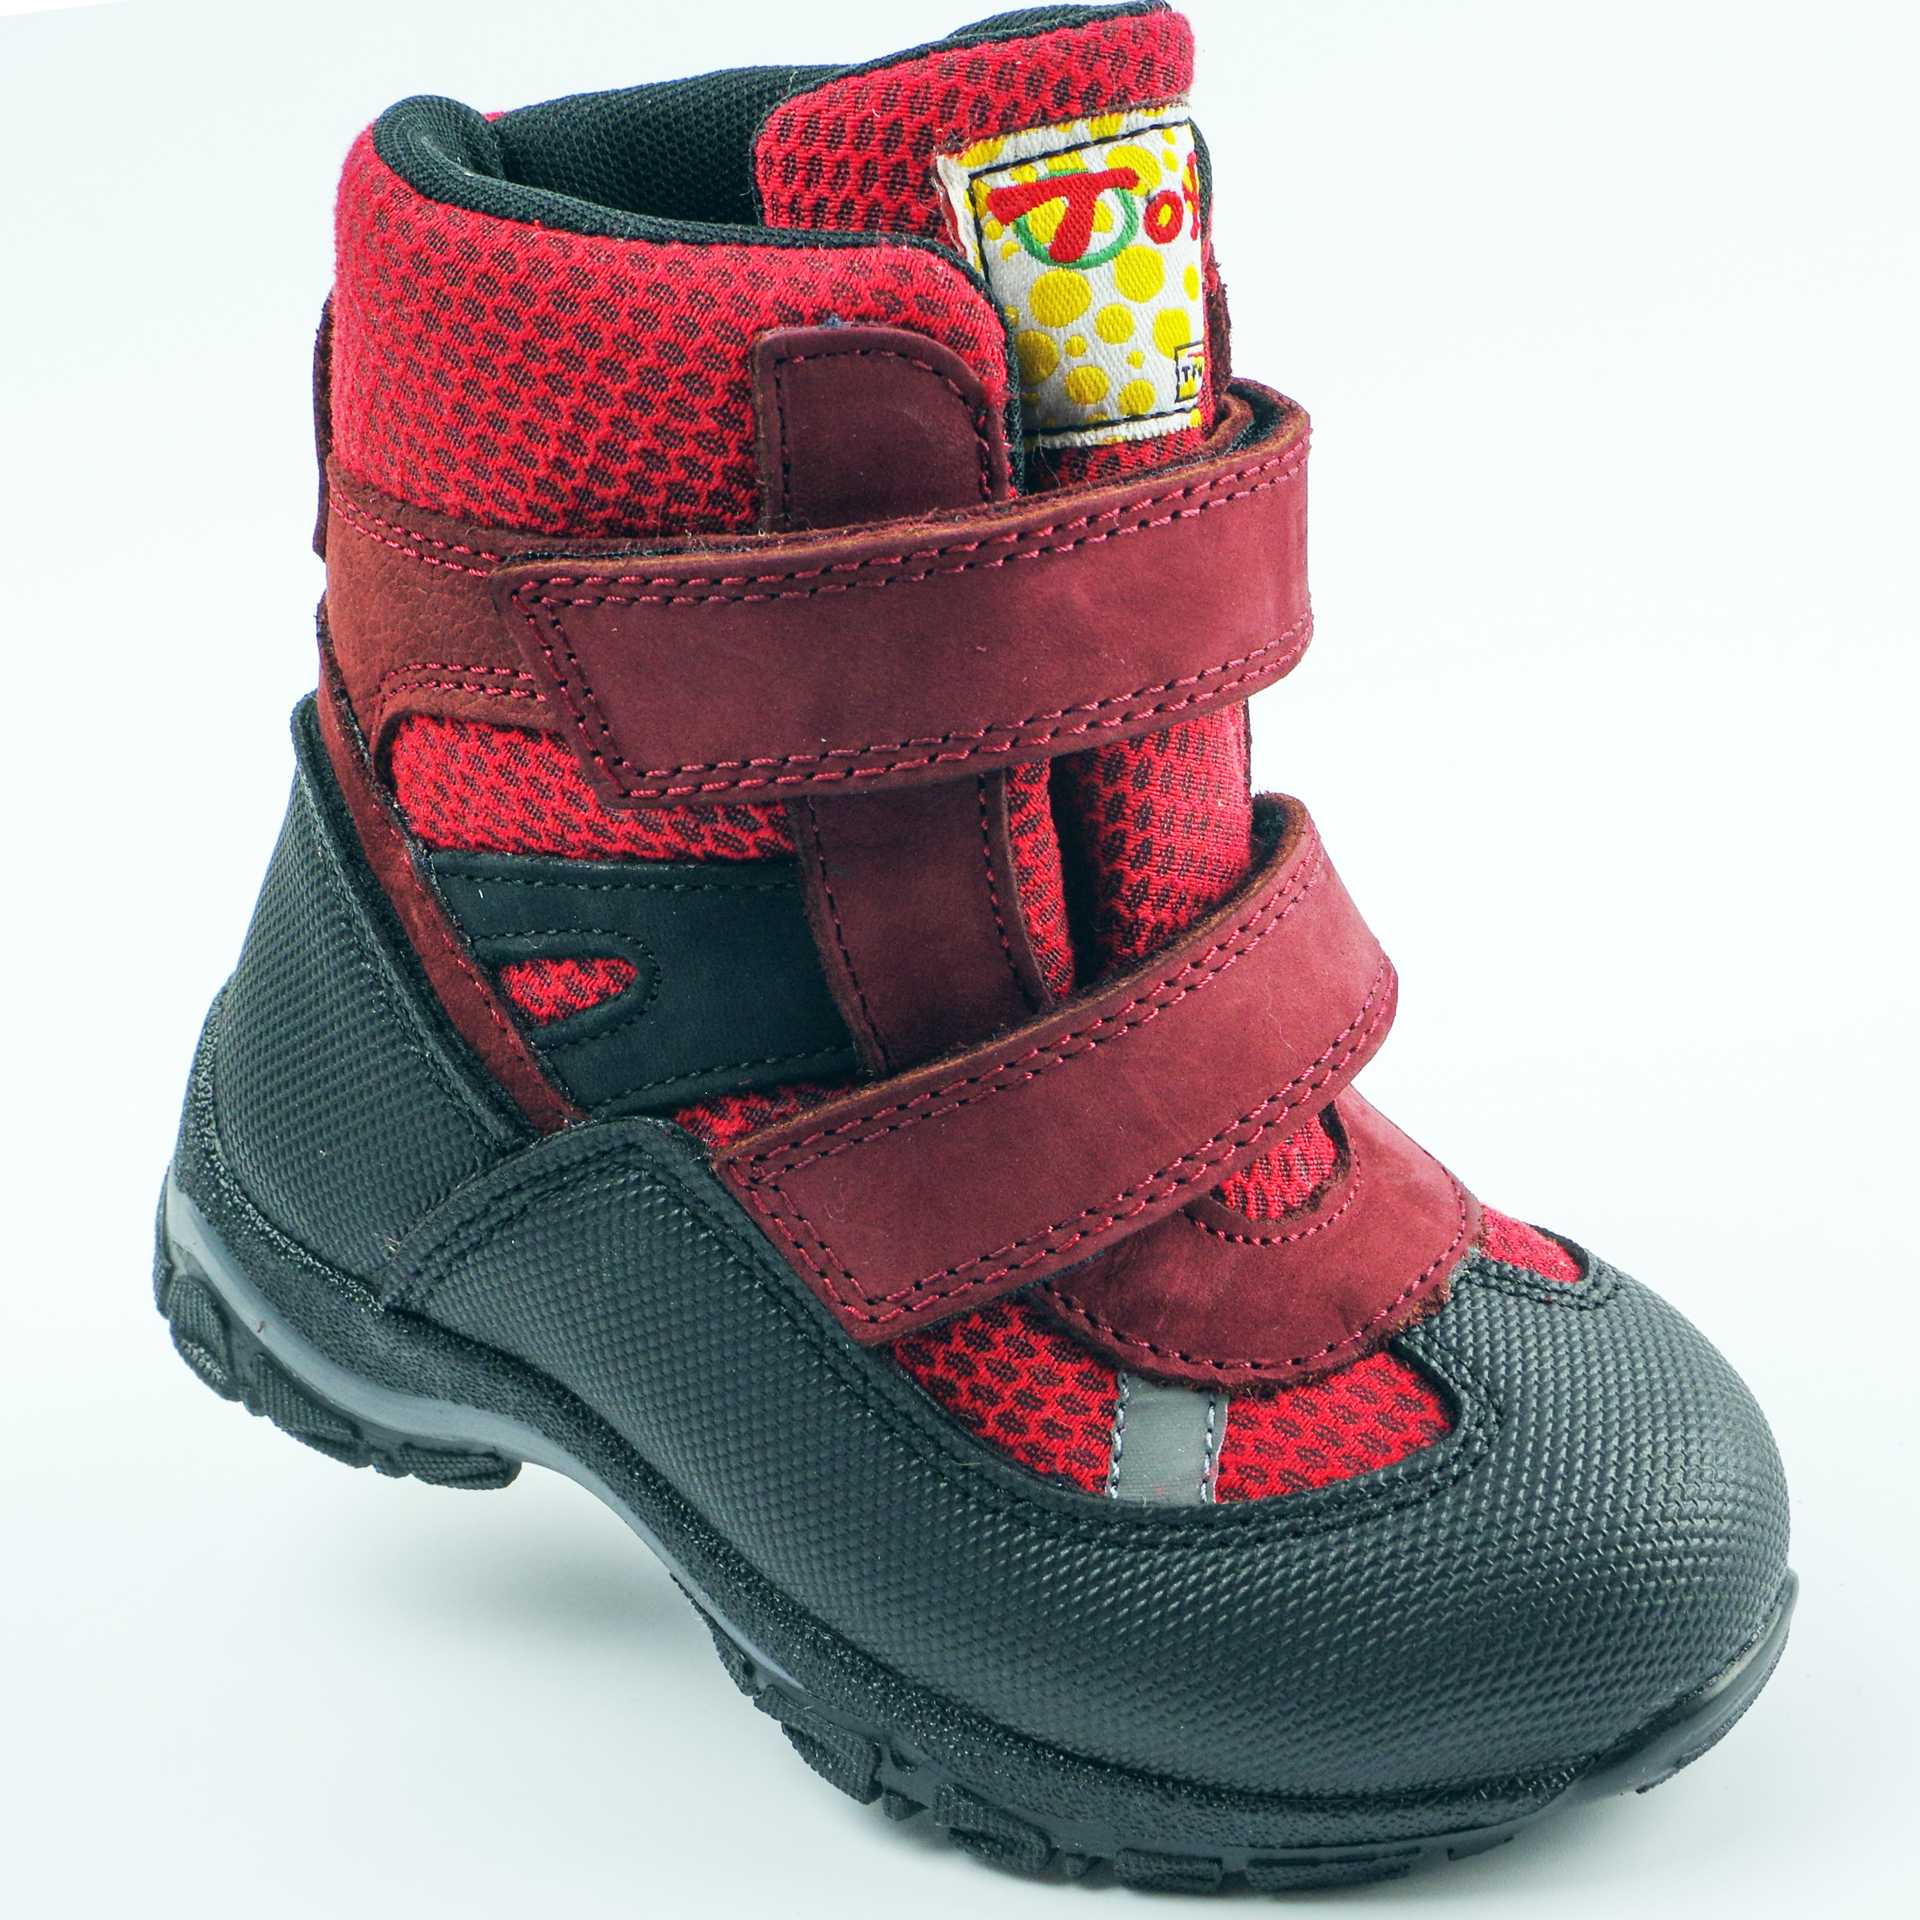 Мембранные зимние ботинки (2145) материал Мембрана, цвет Красный  для девочки 22-25 размеры – Sole Kids, Днепр